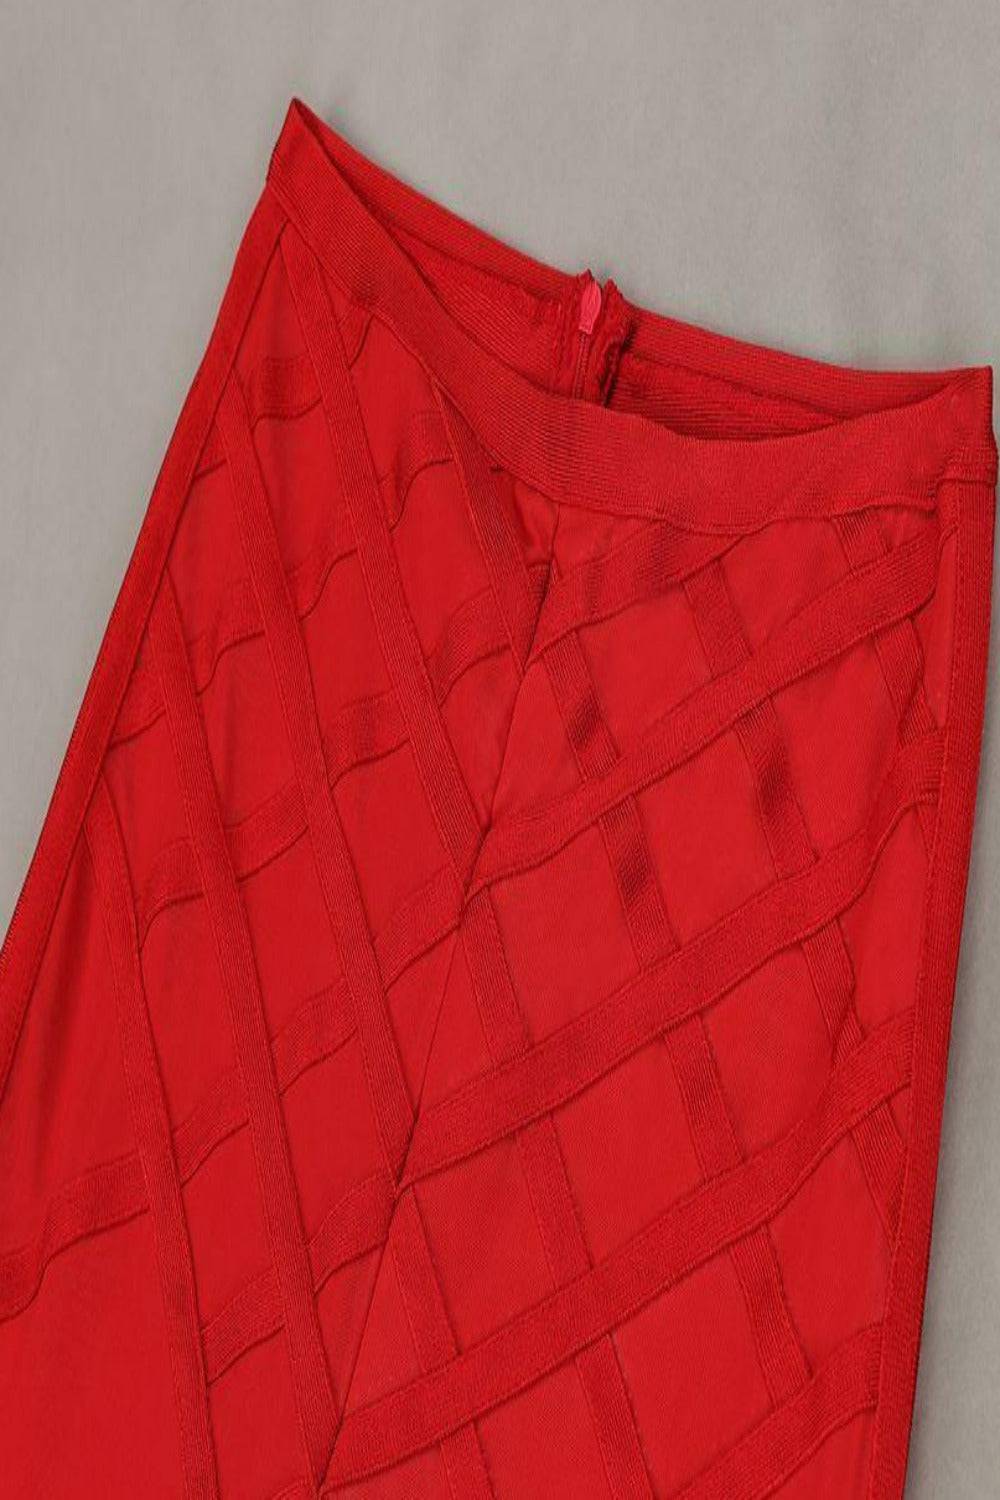 Feather Long Sleeve 2 Piece Red Jumpsuit Set - TGC Boutique - 2 Piece Set